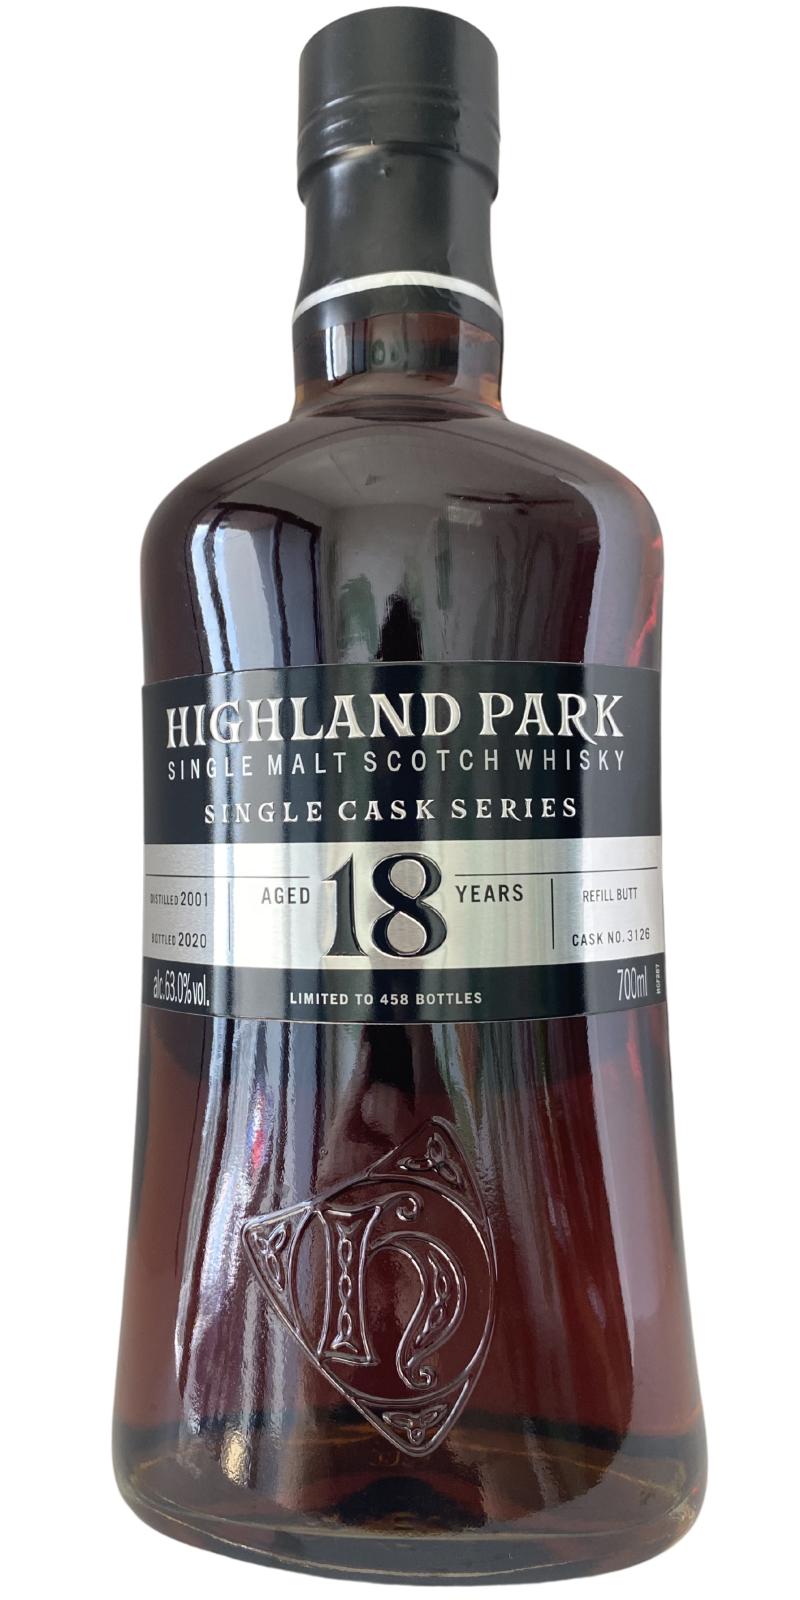 Highland Park 2001 Refill Butt 63% 700ml